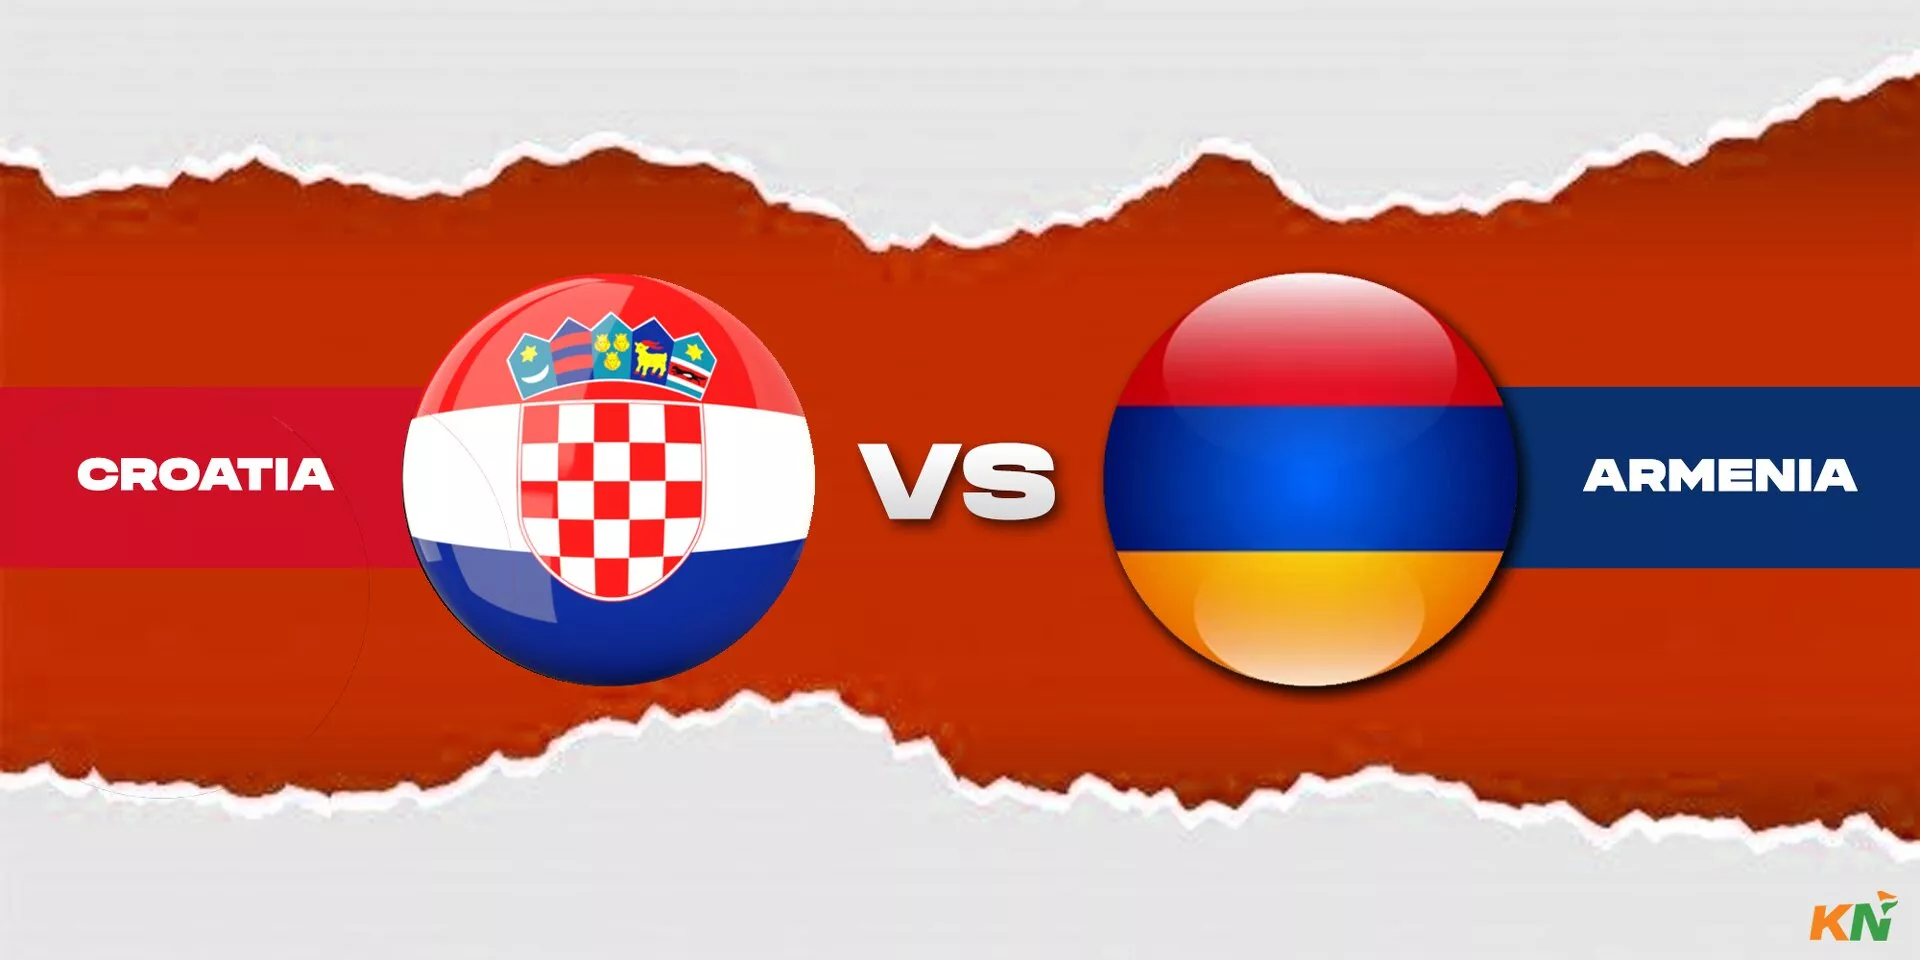 Croatia vs Armenia